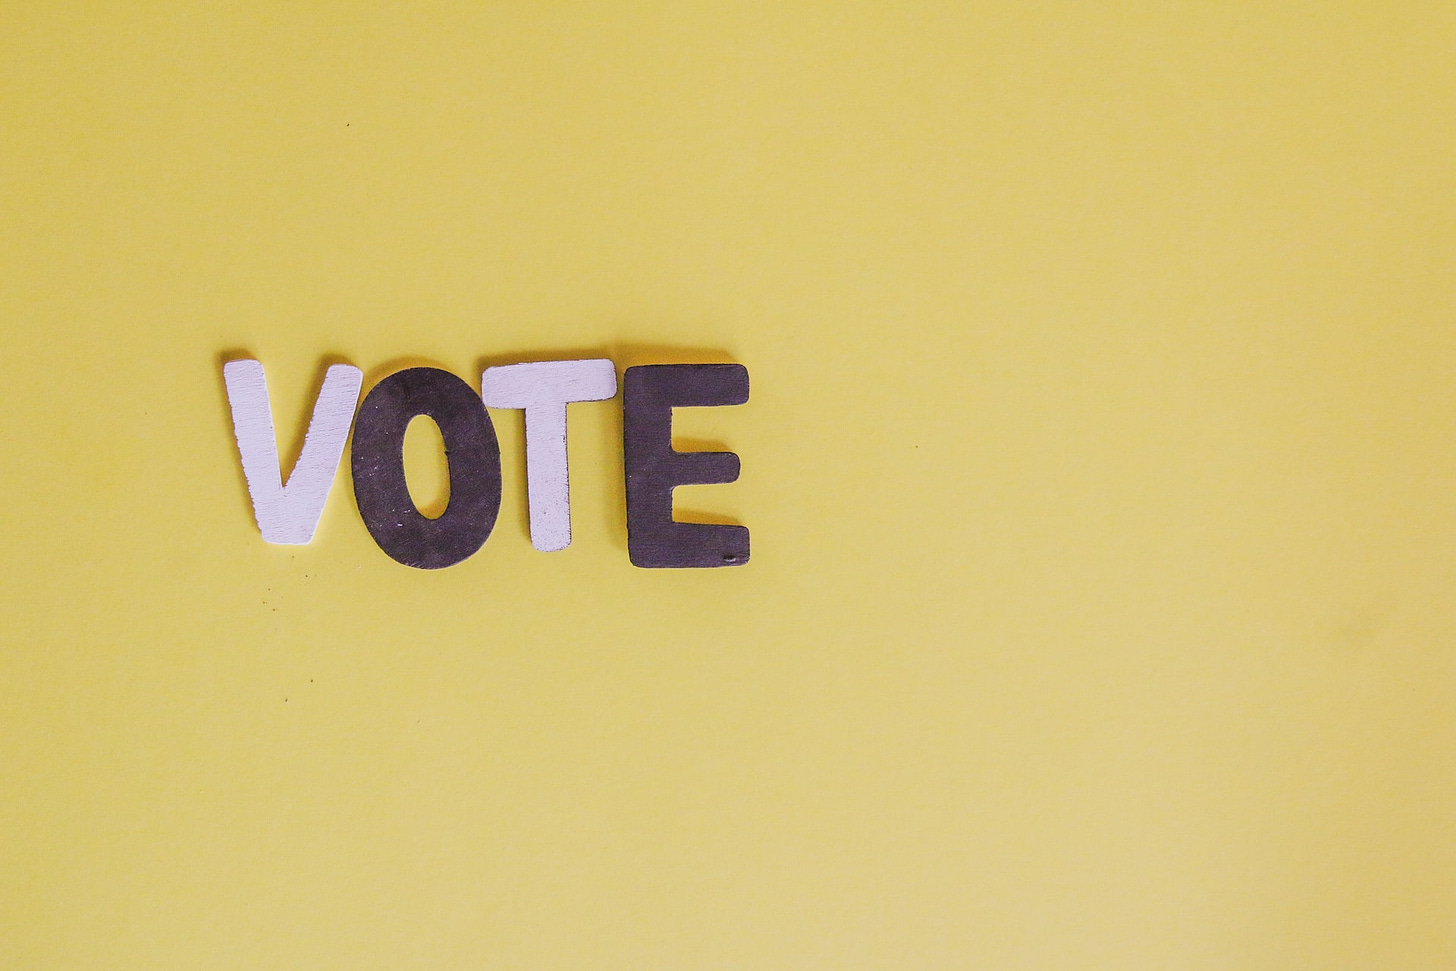 La parola "Vote" con lettere rosa e viola appoggiate su uno sfondo giallo ocra.